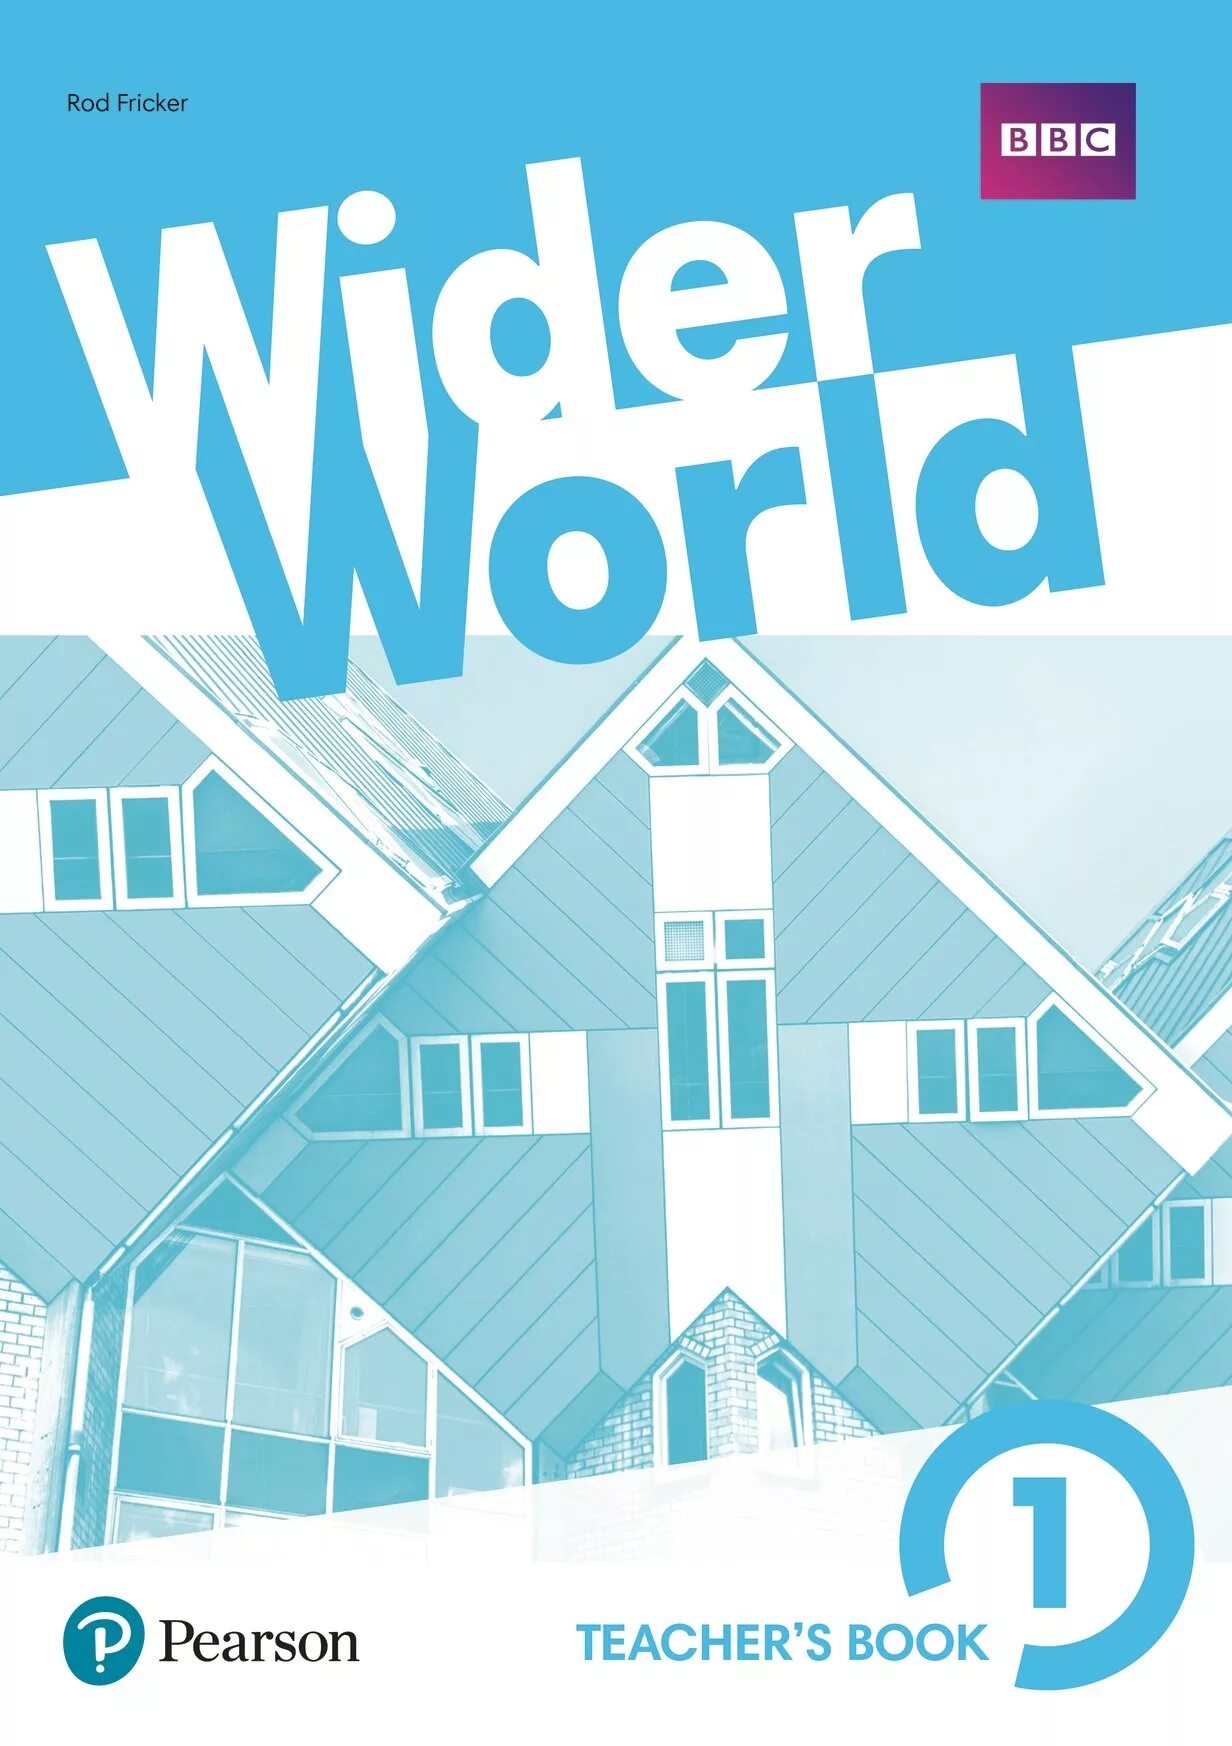 Wider world 1 book. Wider World Pearson. Wider World книга. Учебник wider World 1. Wider World учебник.